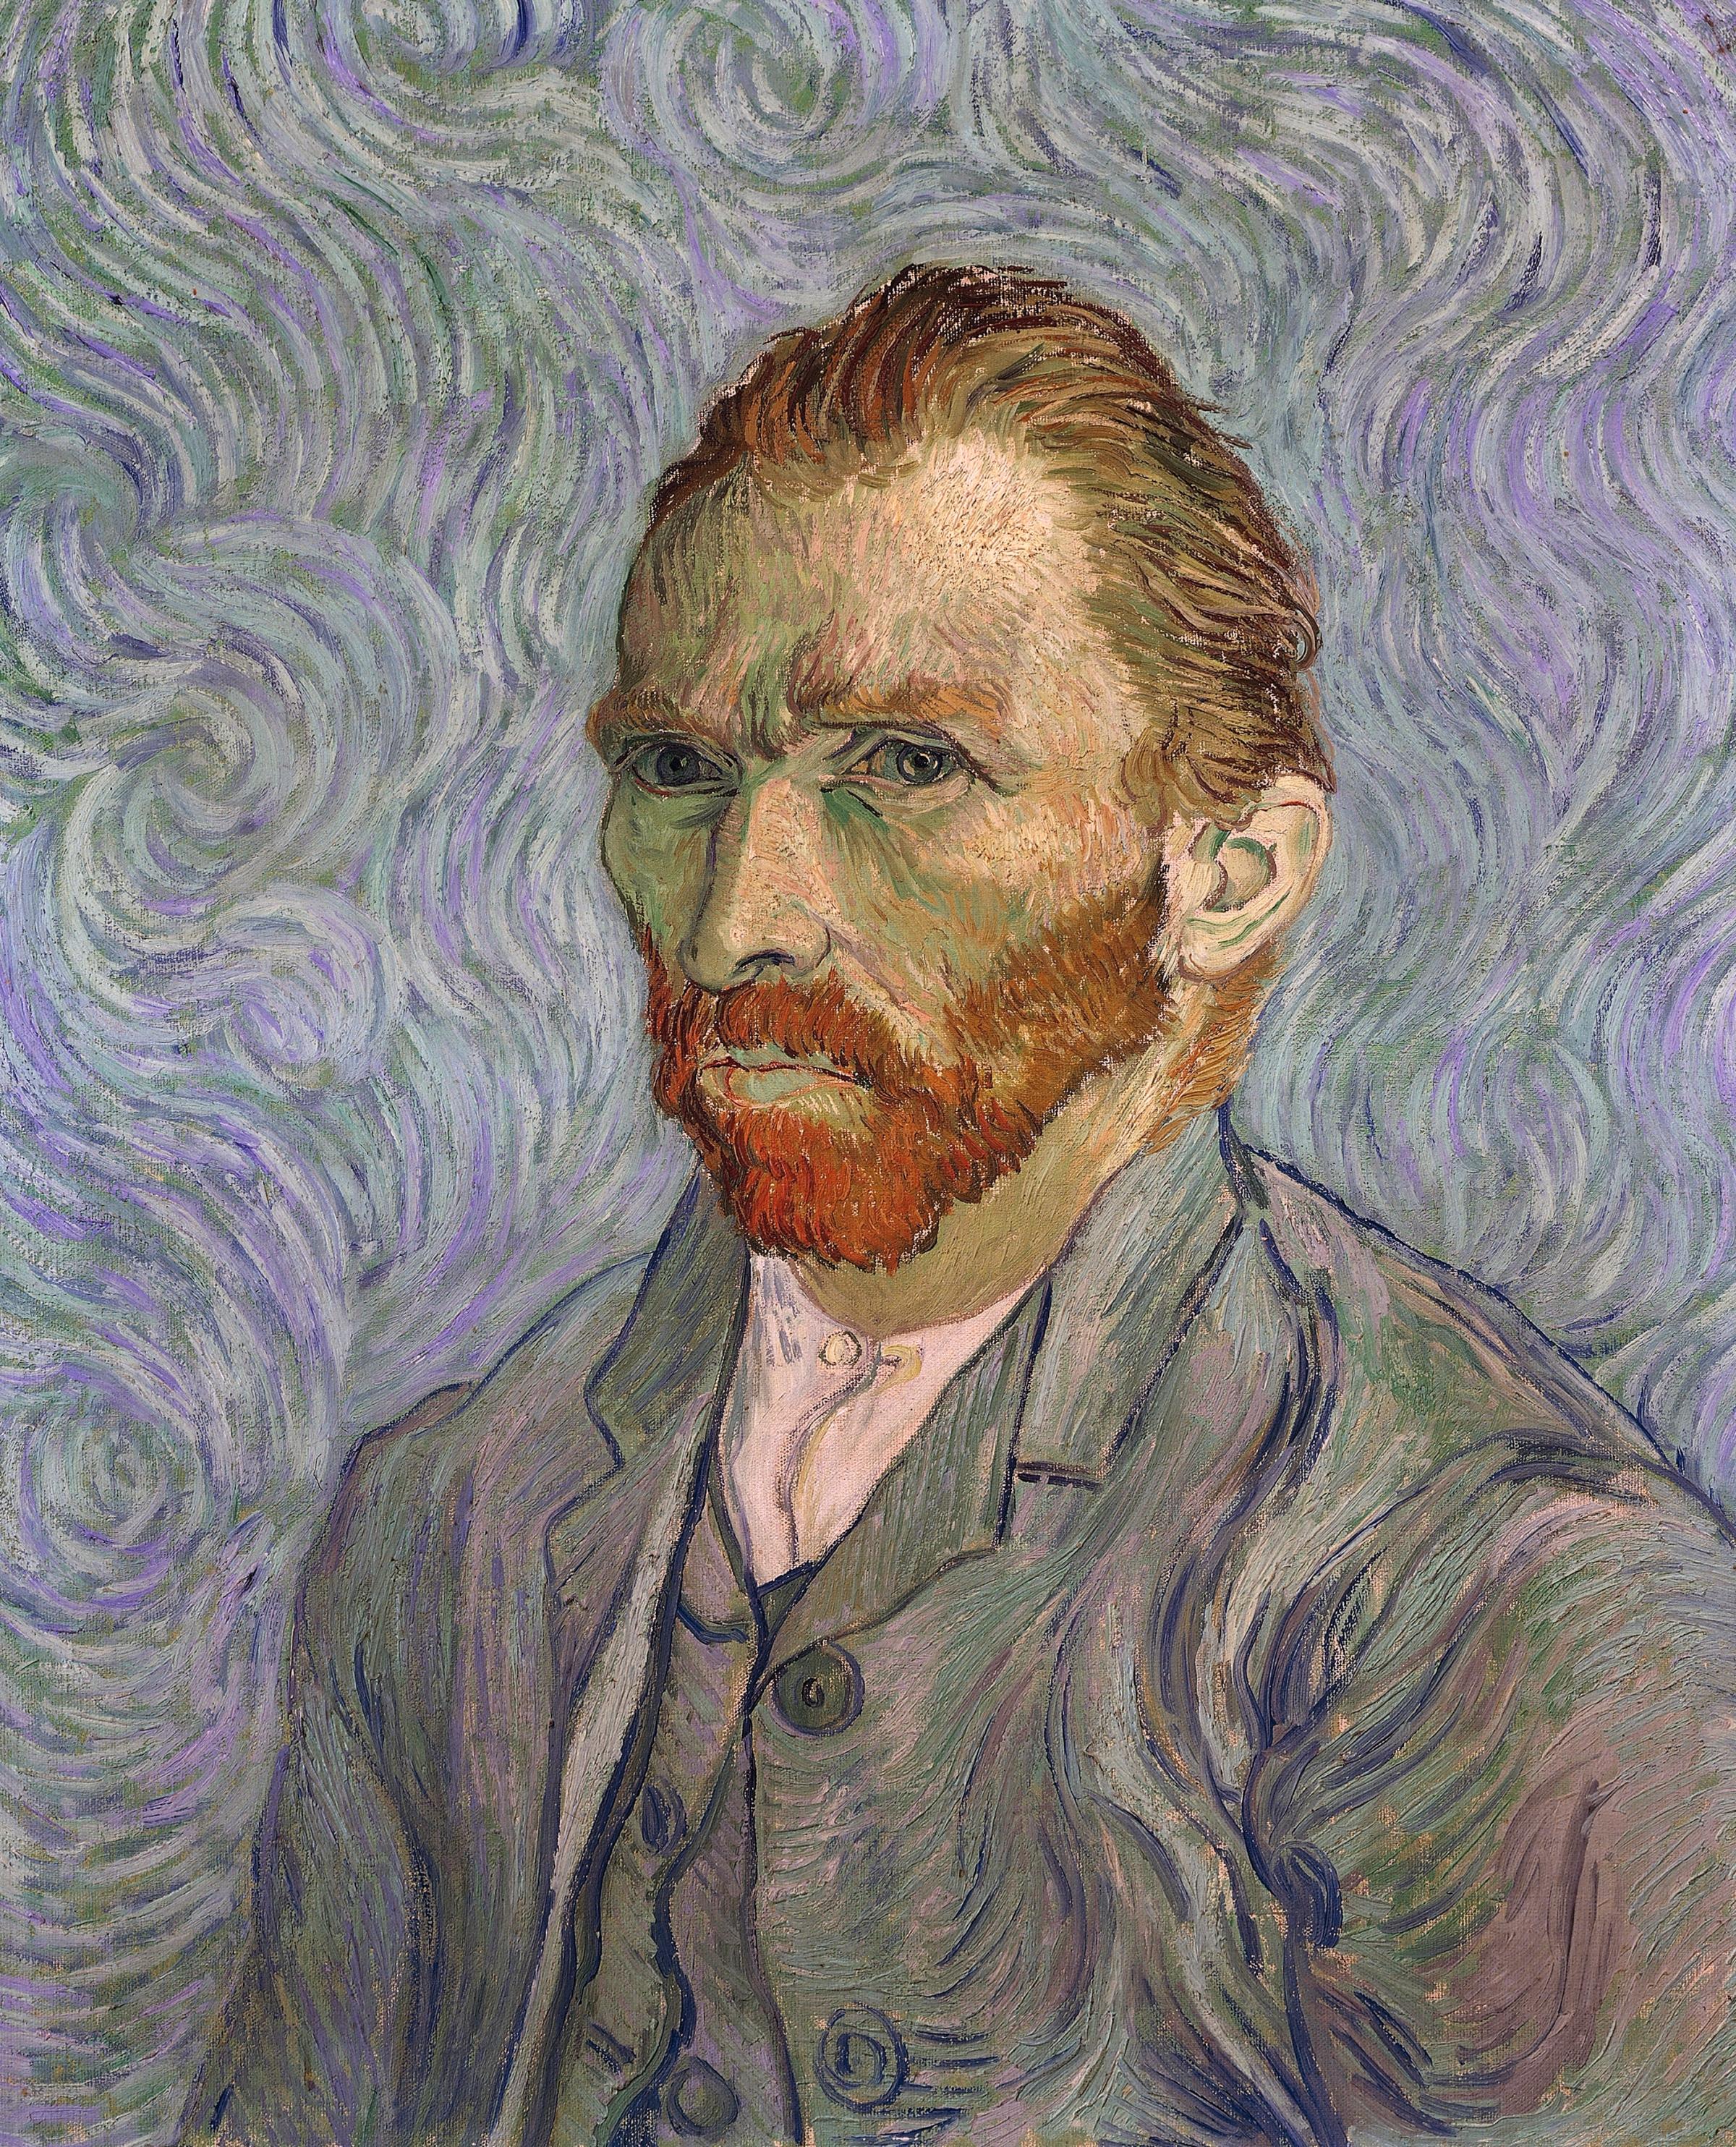 Self-Portrait, 1889, by Vincent Van Gogh (1853-1890).